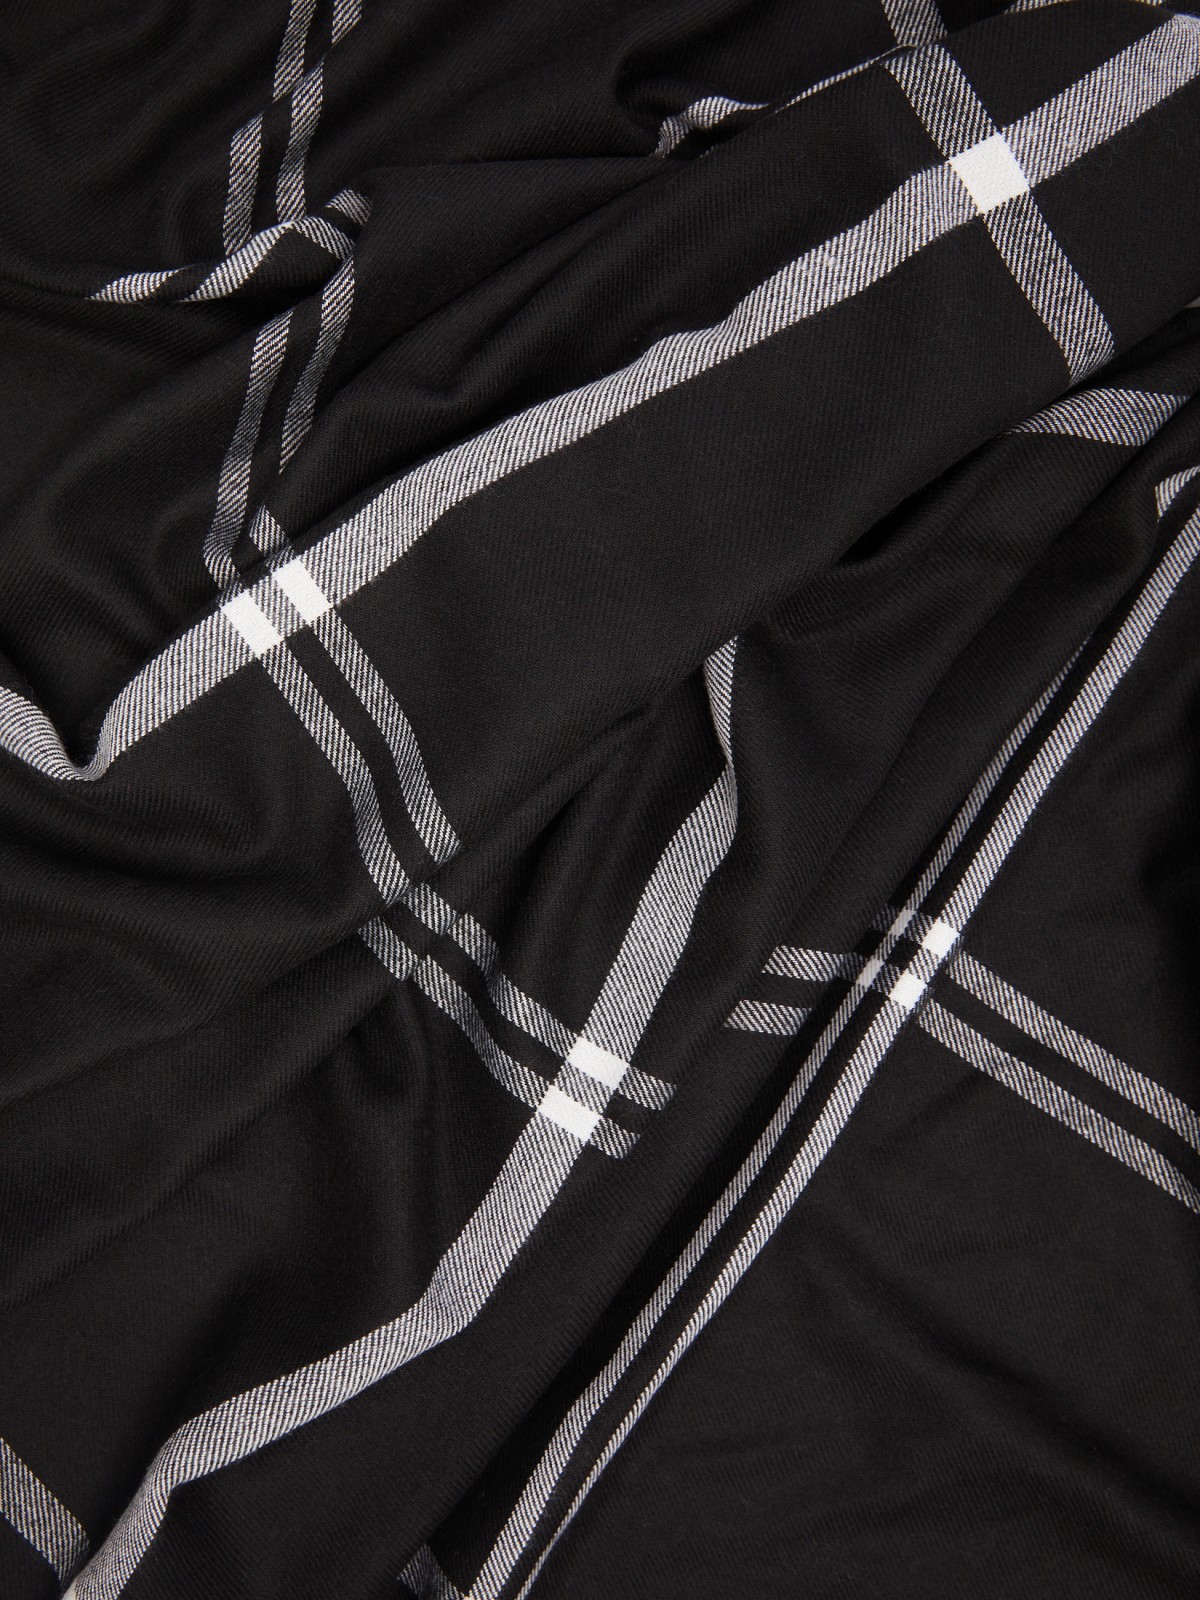 Тканевый клетчатый шарф с короткой бахромой zolla 024119159045, цвет черный, размер No_size - фото 2